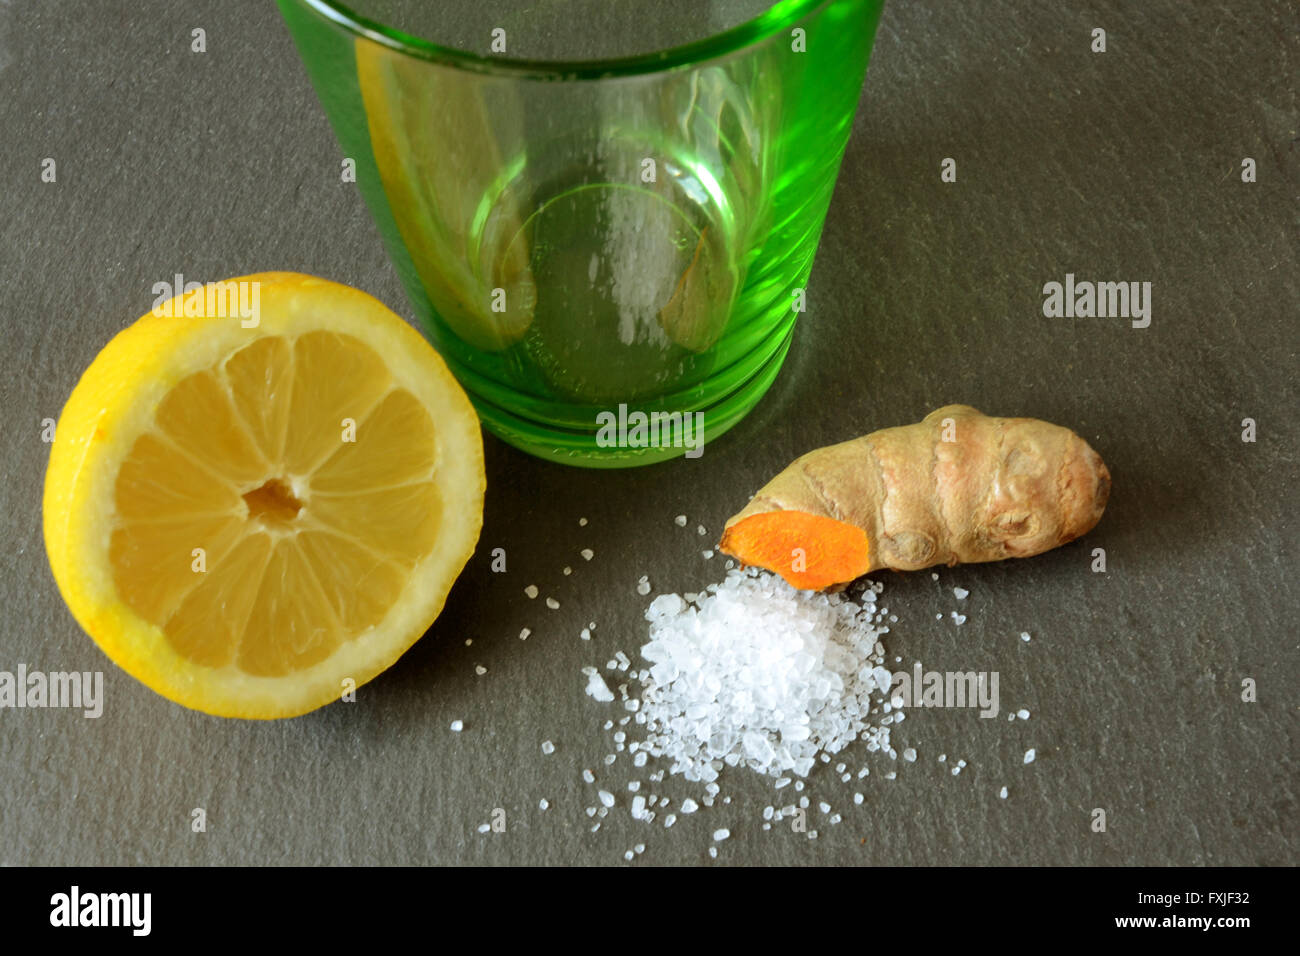 Ein gesunder Weg, um den Tag zu beginnen: ein Glas Limonade, die auch einige Meer-Salz und gemahlener Kurkuma-Wurzel (Curcumin) enthält. Stockfoto